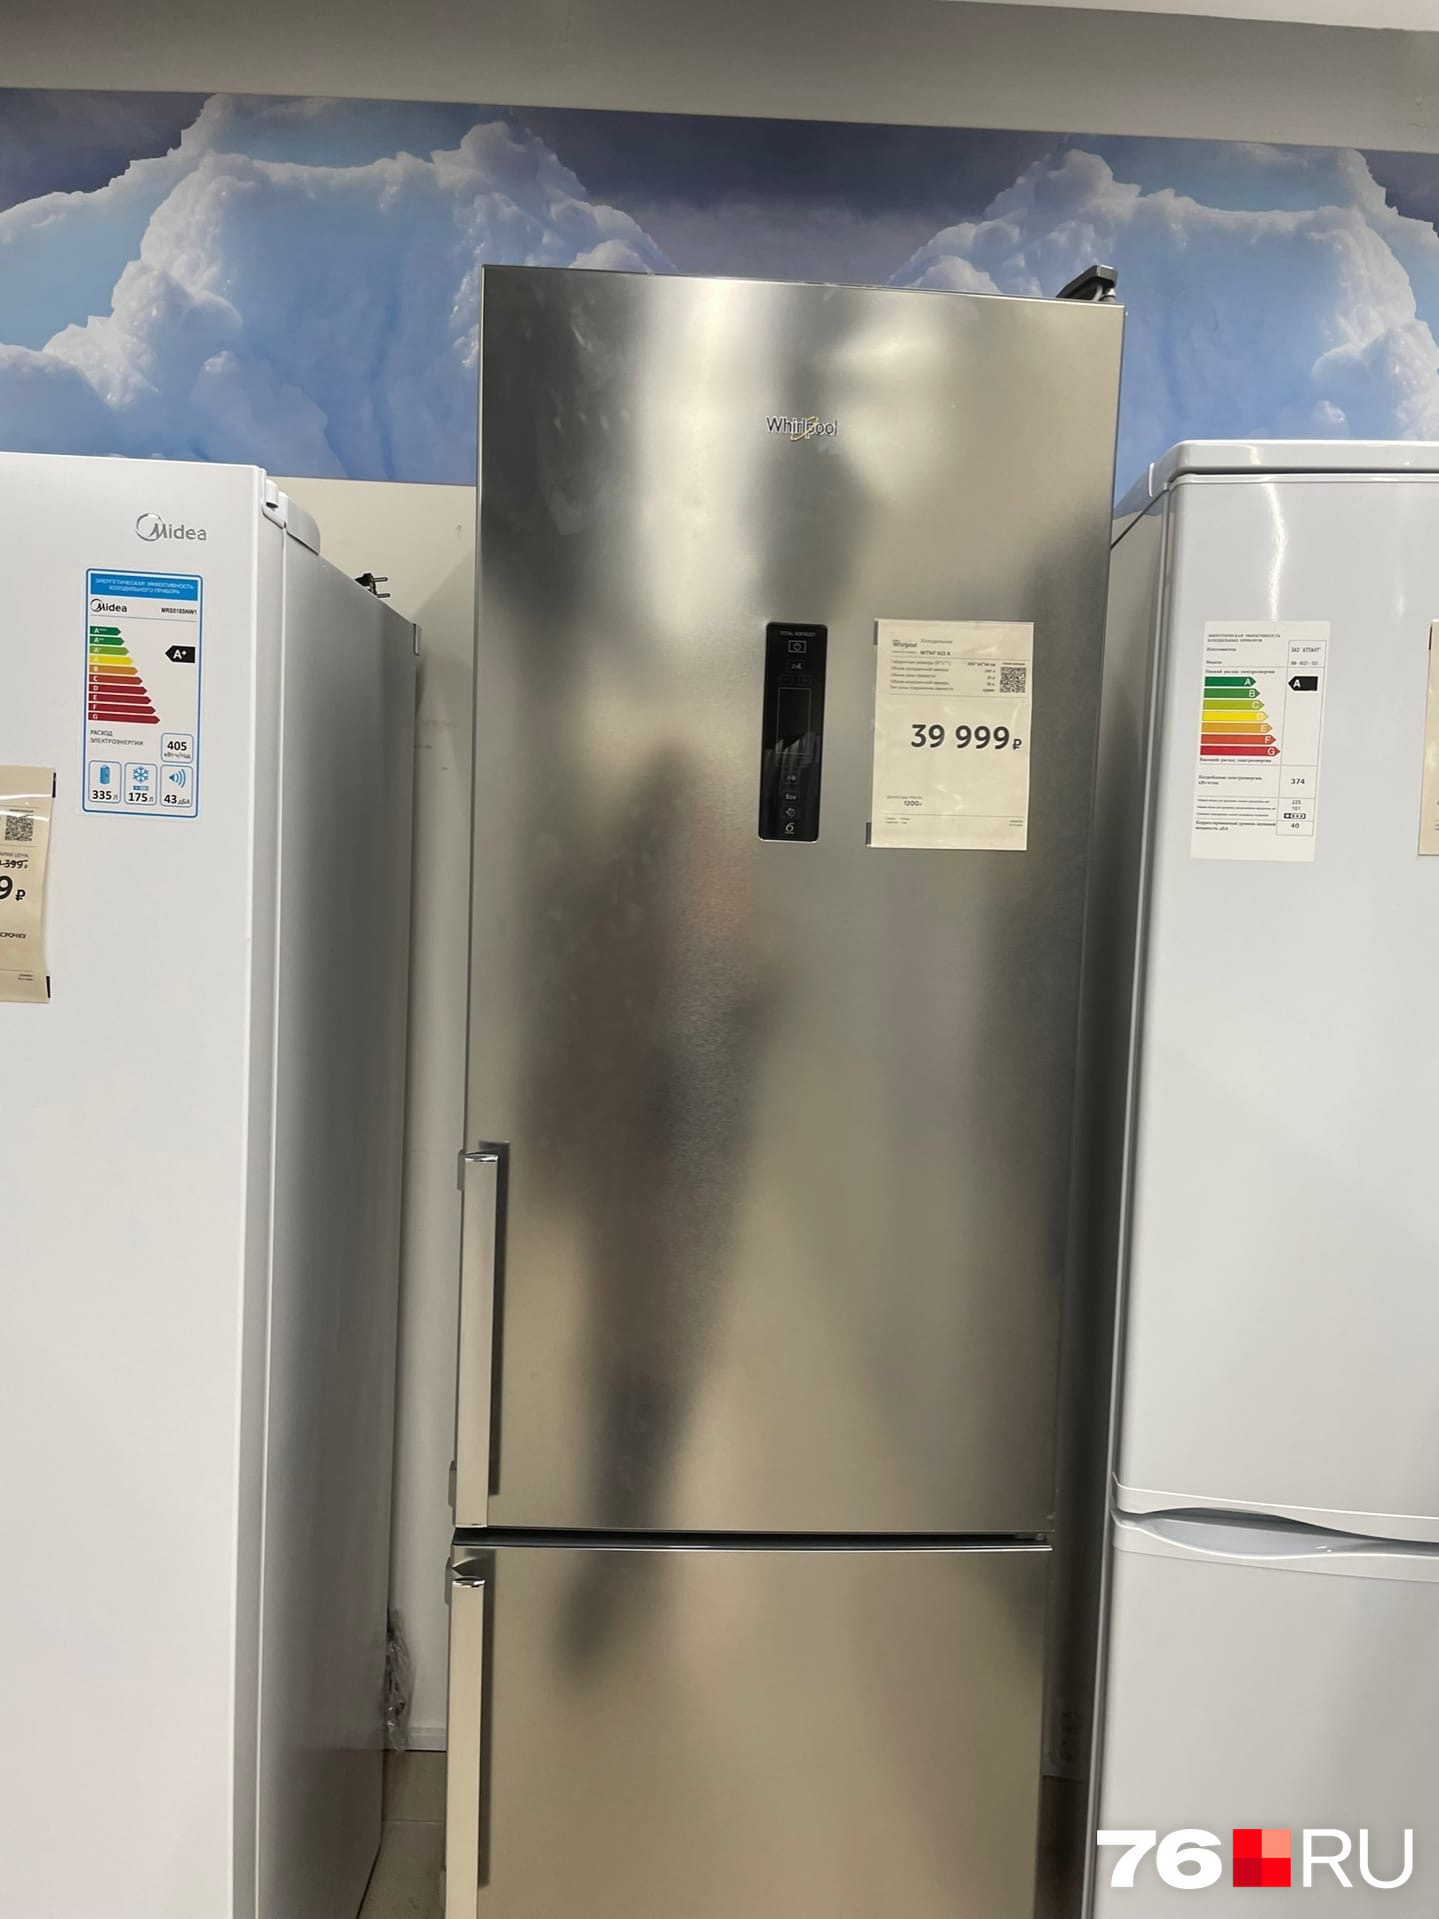 Холодильники американского бренда Whirlpool собирают в Италии, а стиральные машины — в России